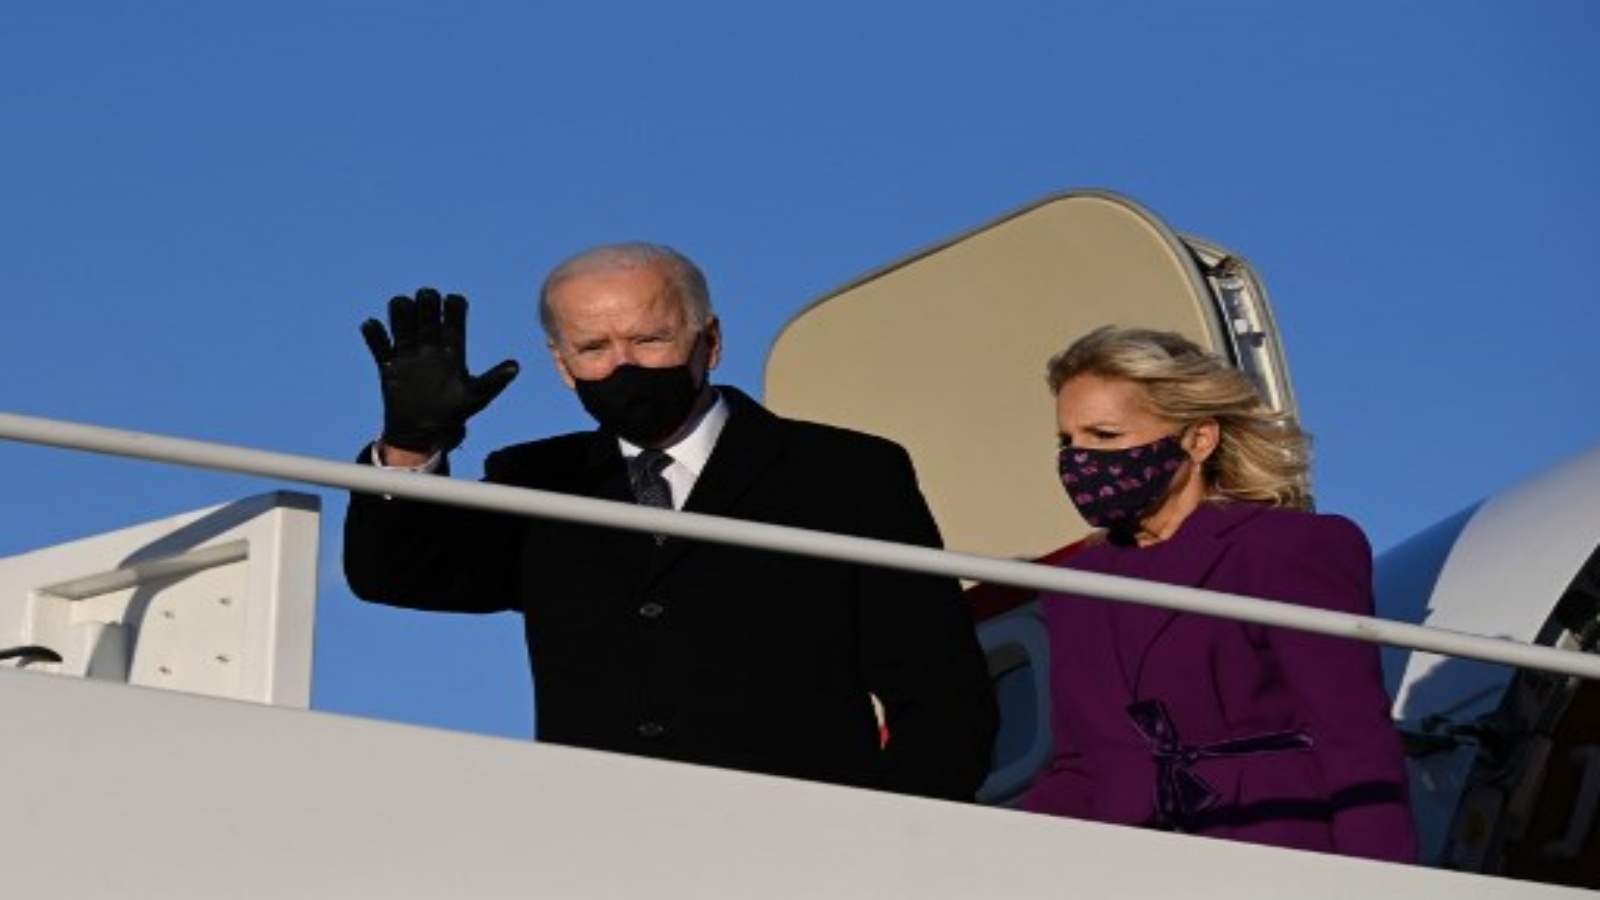 الرئيس الأمريكي المنتخب جو بايدن والسيدة الأولى القادمة جيل بايدن يصلان قاعدة أندروز المشتركة في ماريلاند في 19 يناير 2021 ، قبل يوم واحد من تنصيبه كرئيس للولايات المتحدة رقم 46